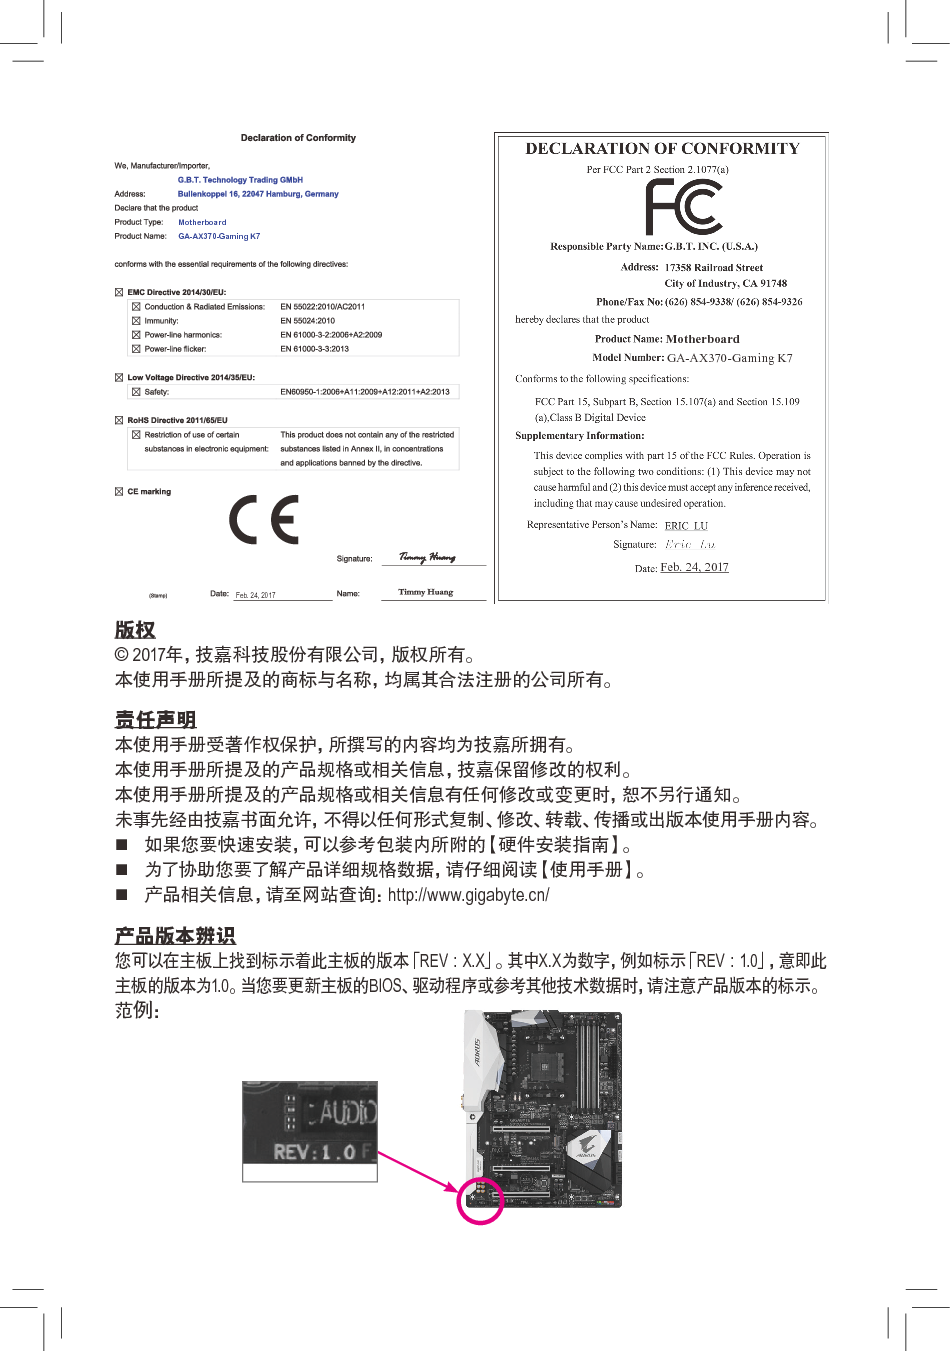 技嘉 Gigabyte GA-AX370-Gaming K7 使用手册 第1页